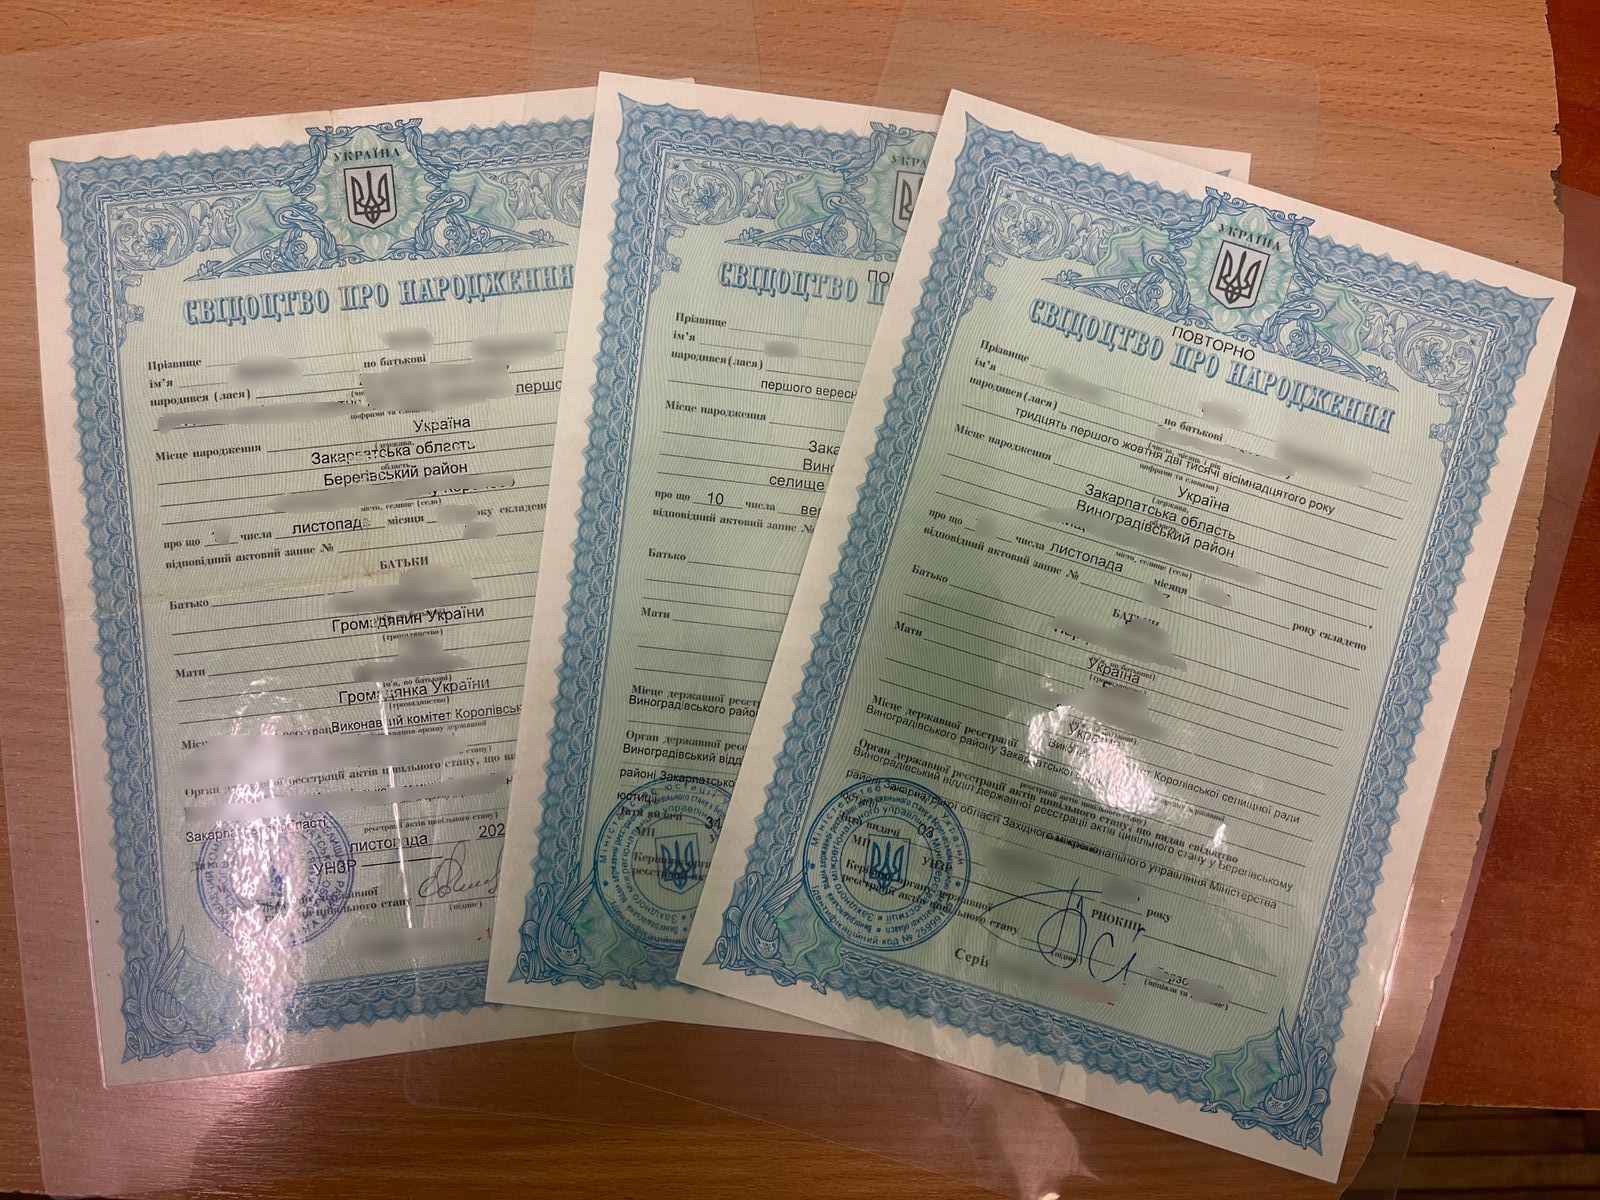 Molodyk a fourni trois certificats de naissance pour les enfants pour vérification